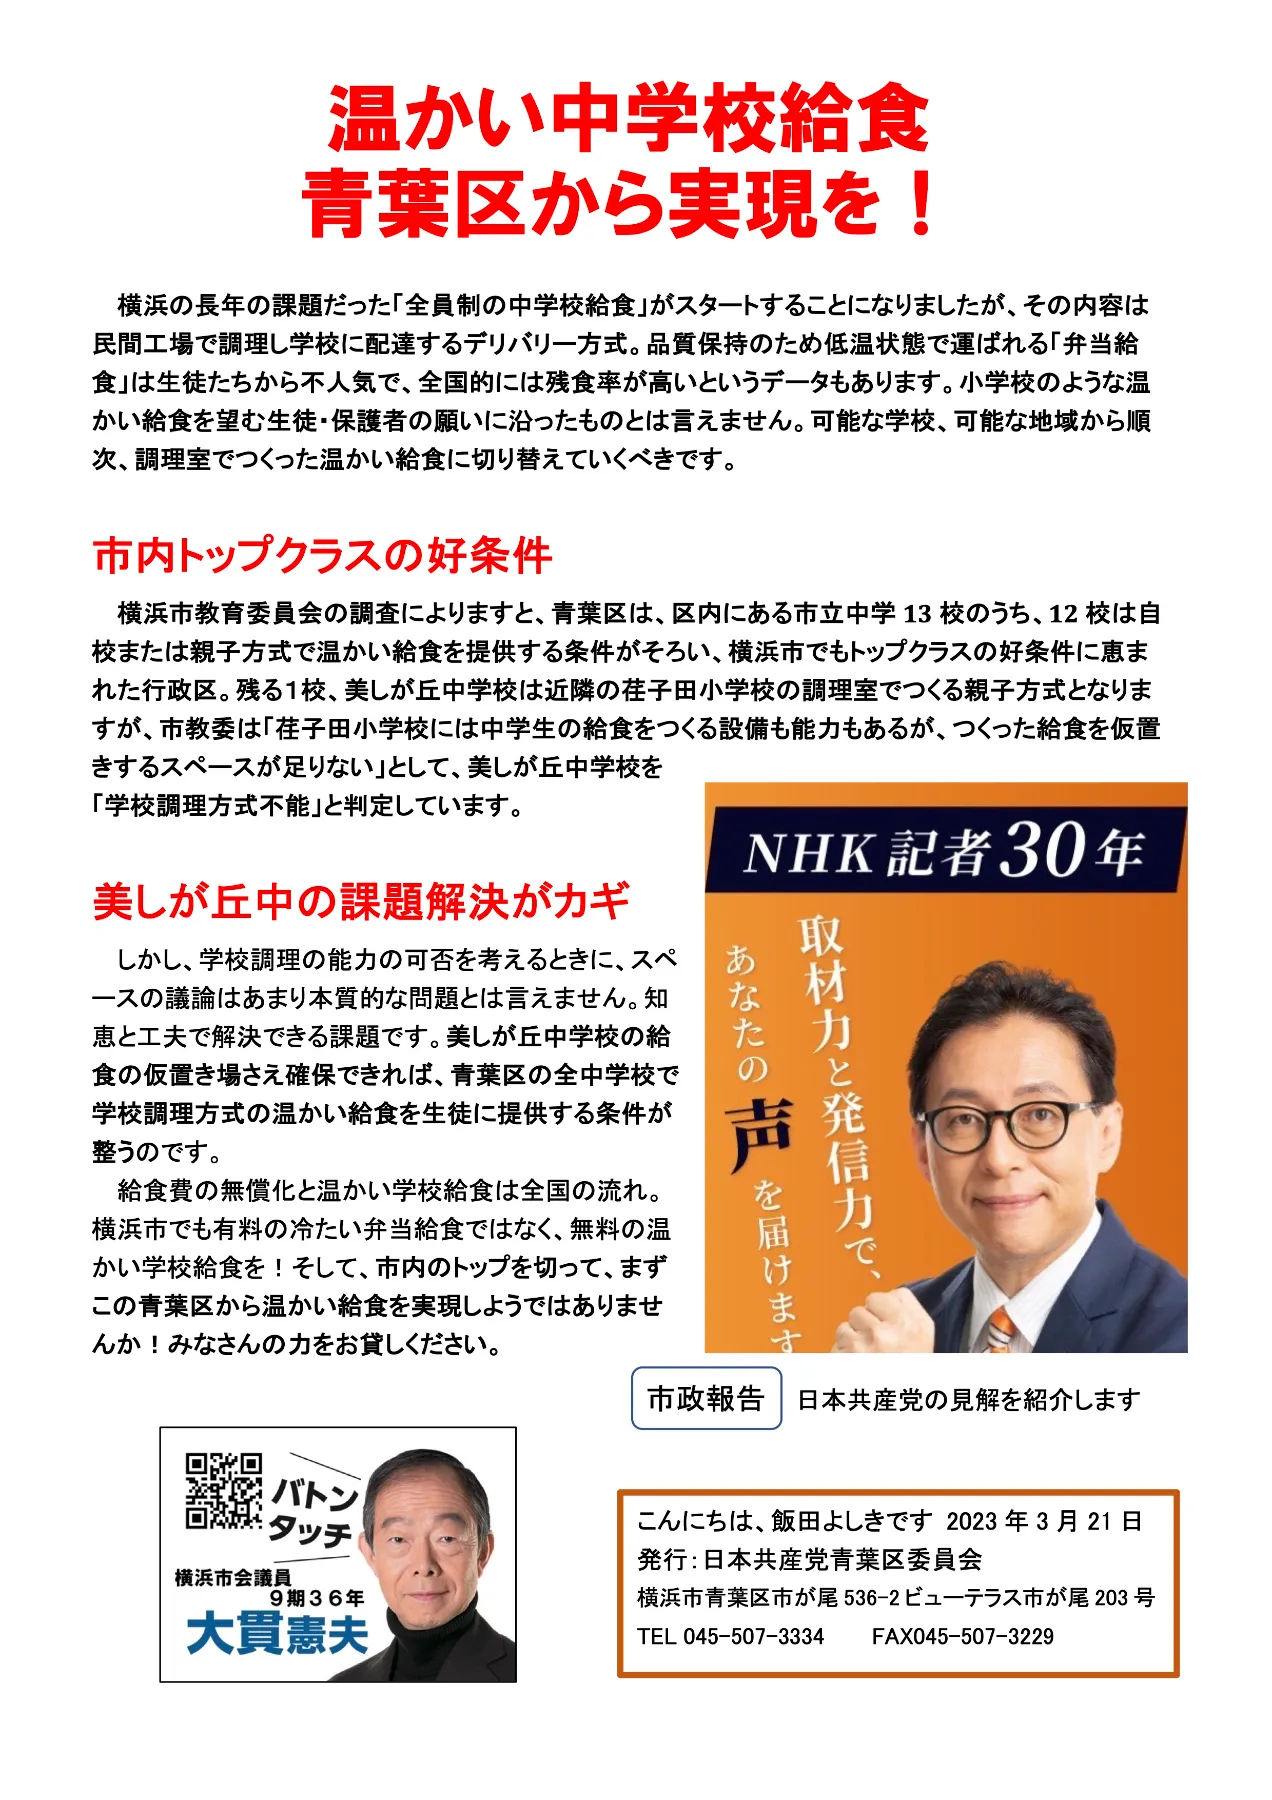 飯田よしき｜日本共産党 横浜市会に挑戦！｜NHK記者30年